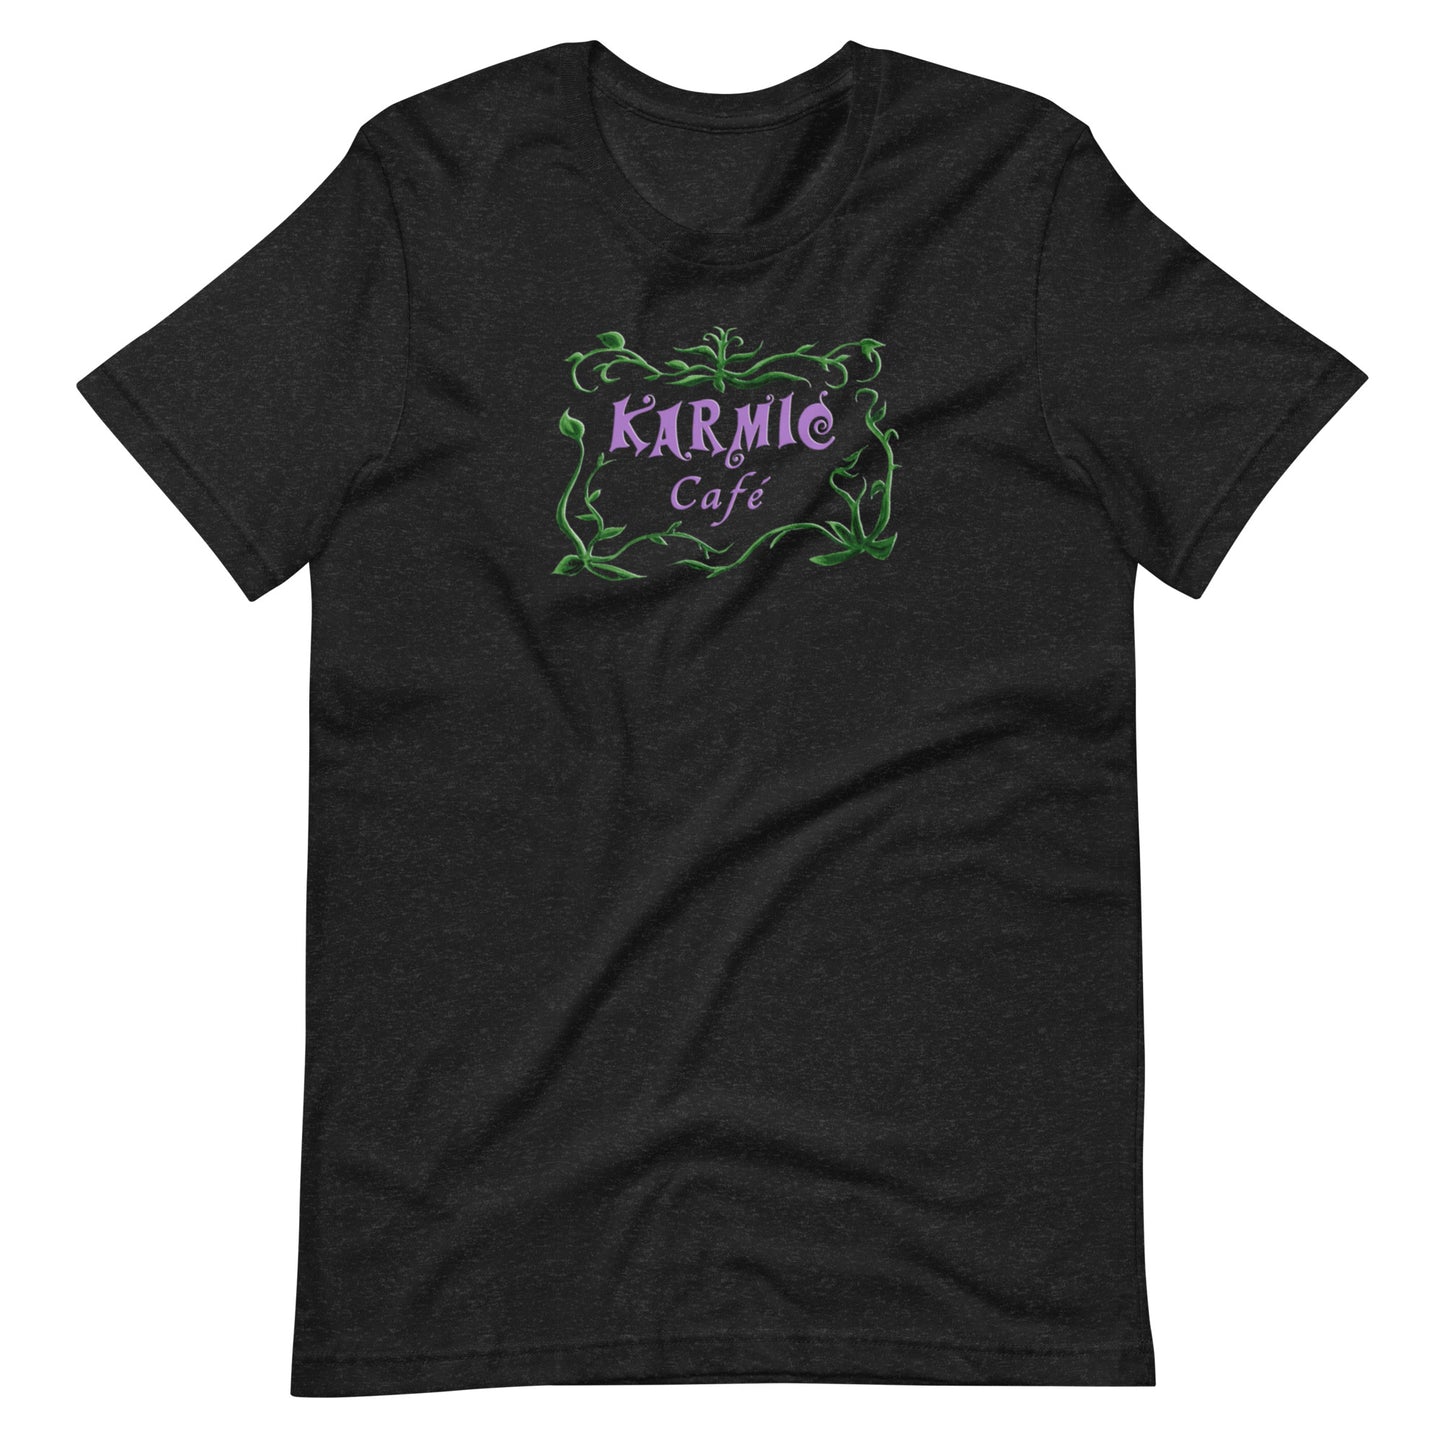 Super Comfy Fat Cat - Karmic Cafe T-shirt (black short-sleeved)